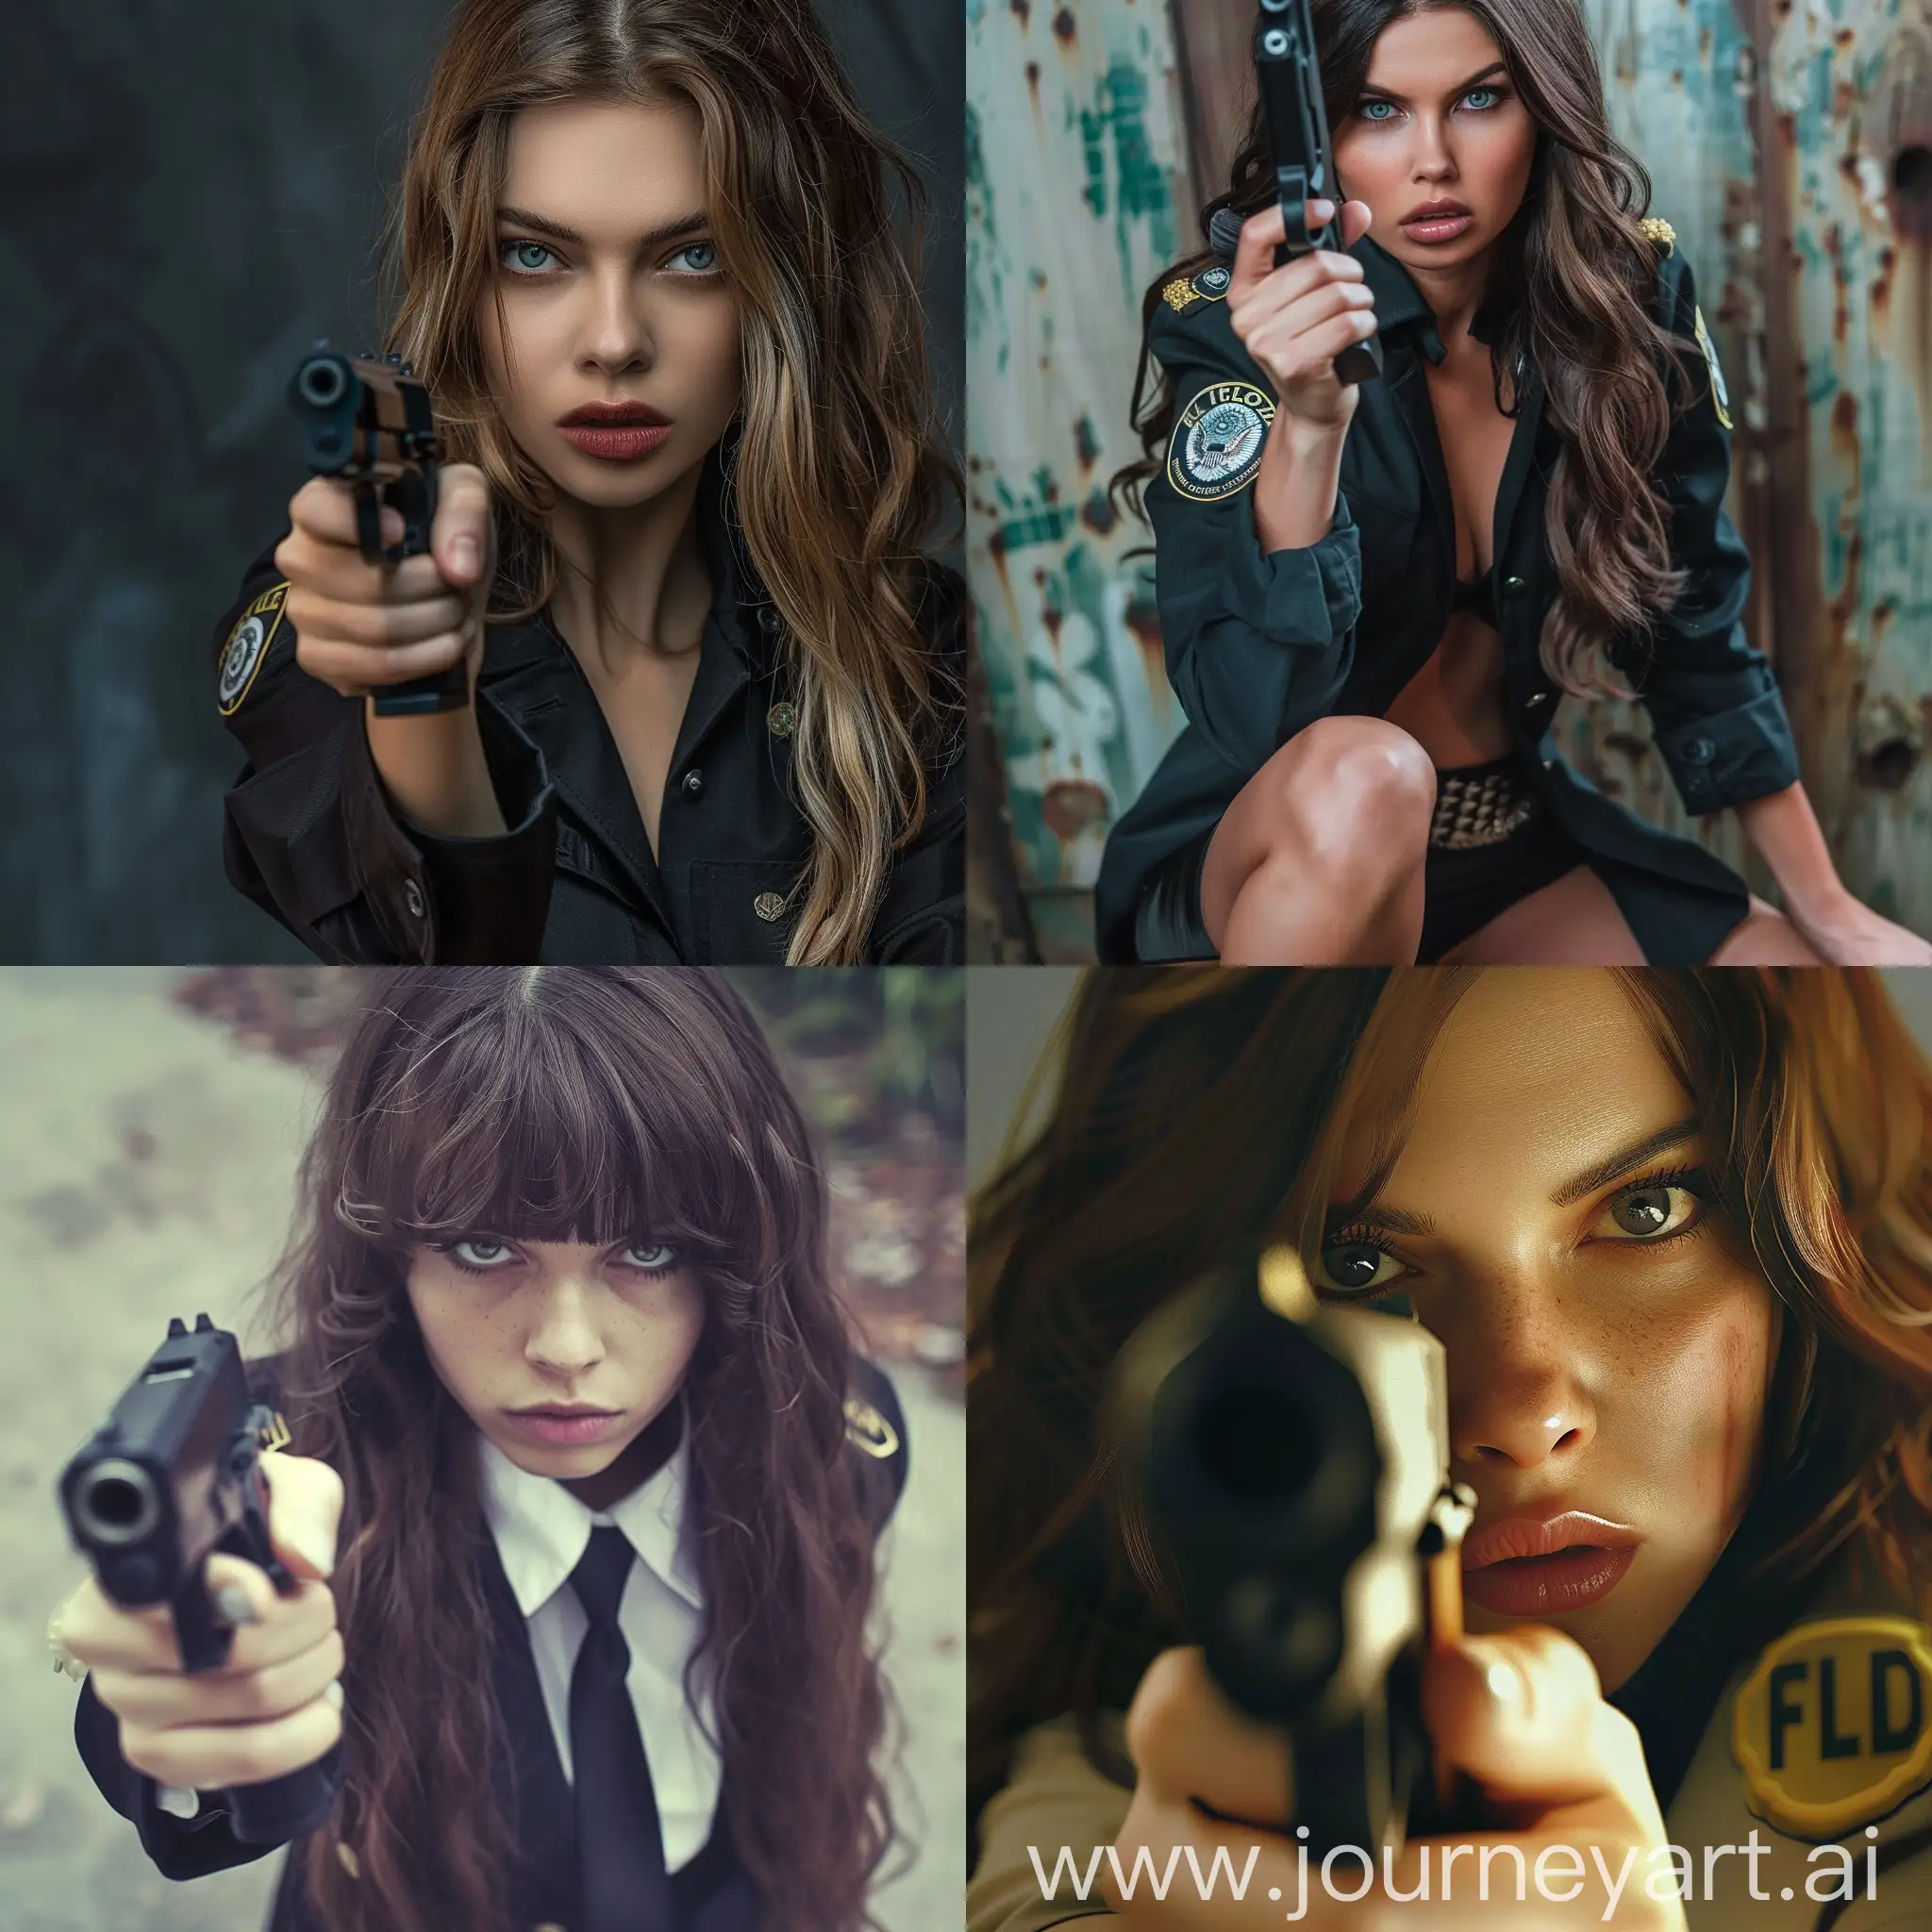 beauty fbi agent girl with gun